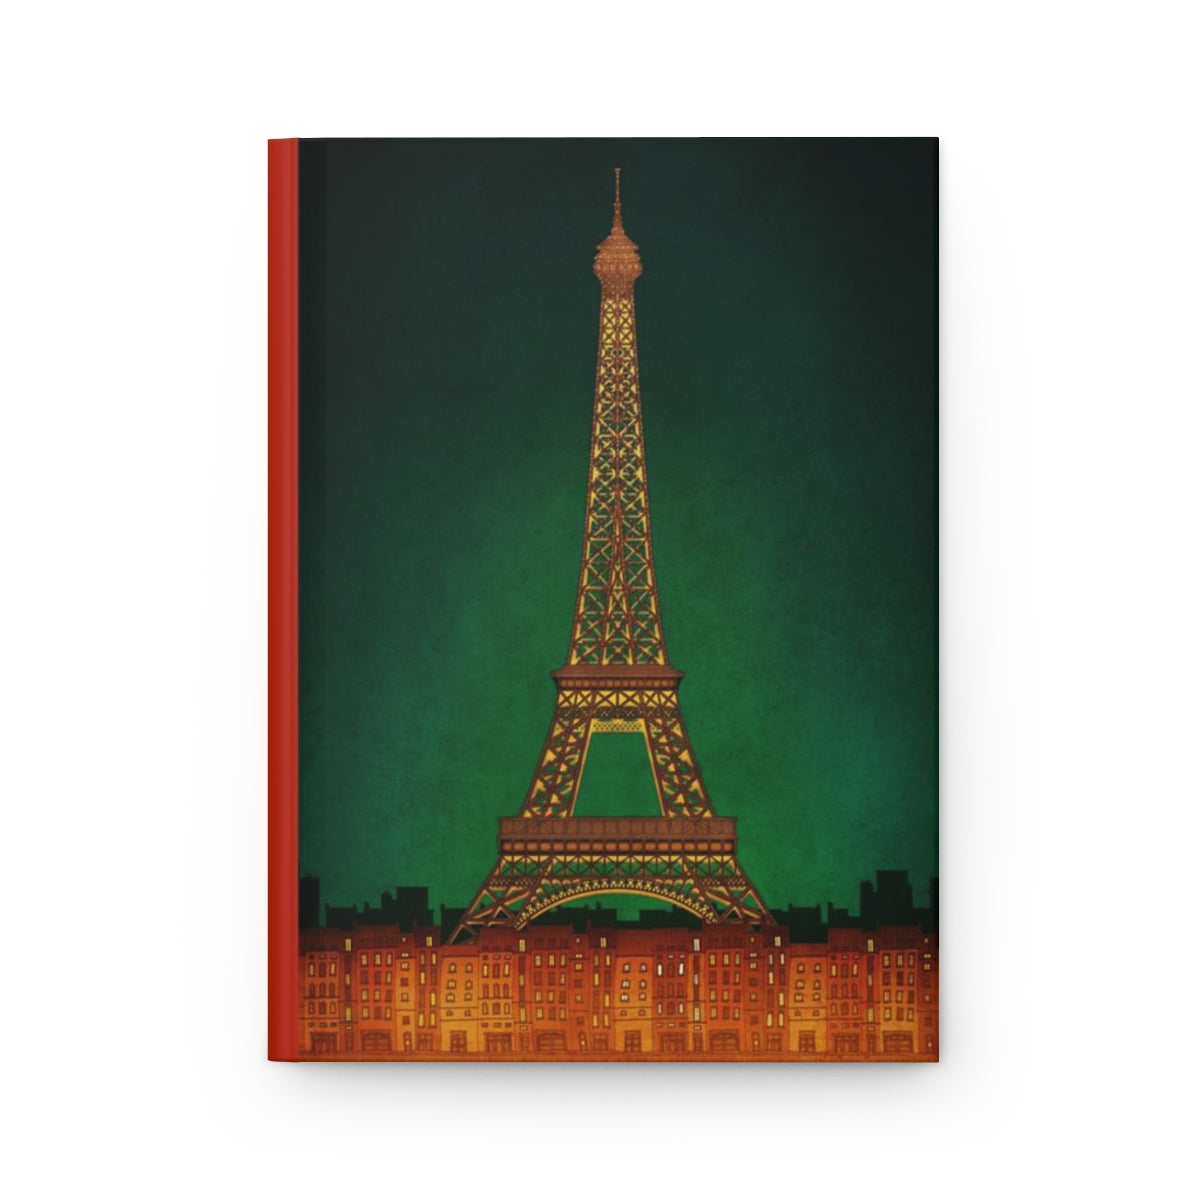 Paris by night - Paris Art Journal No.34